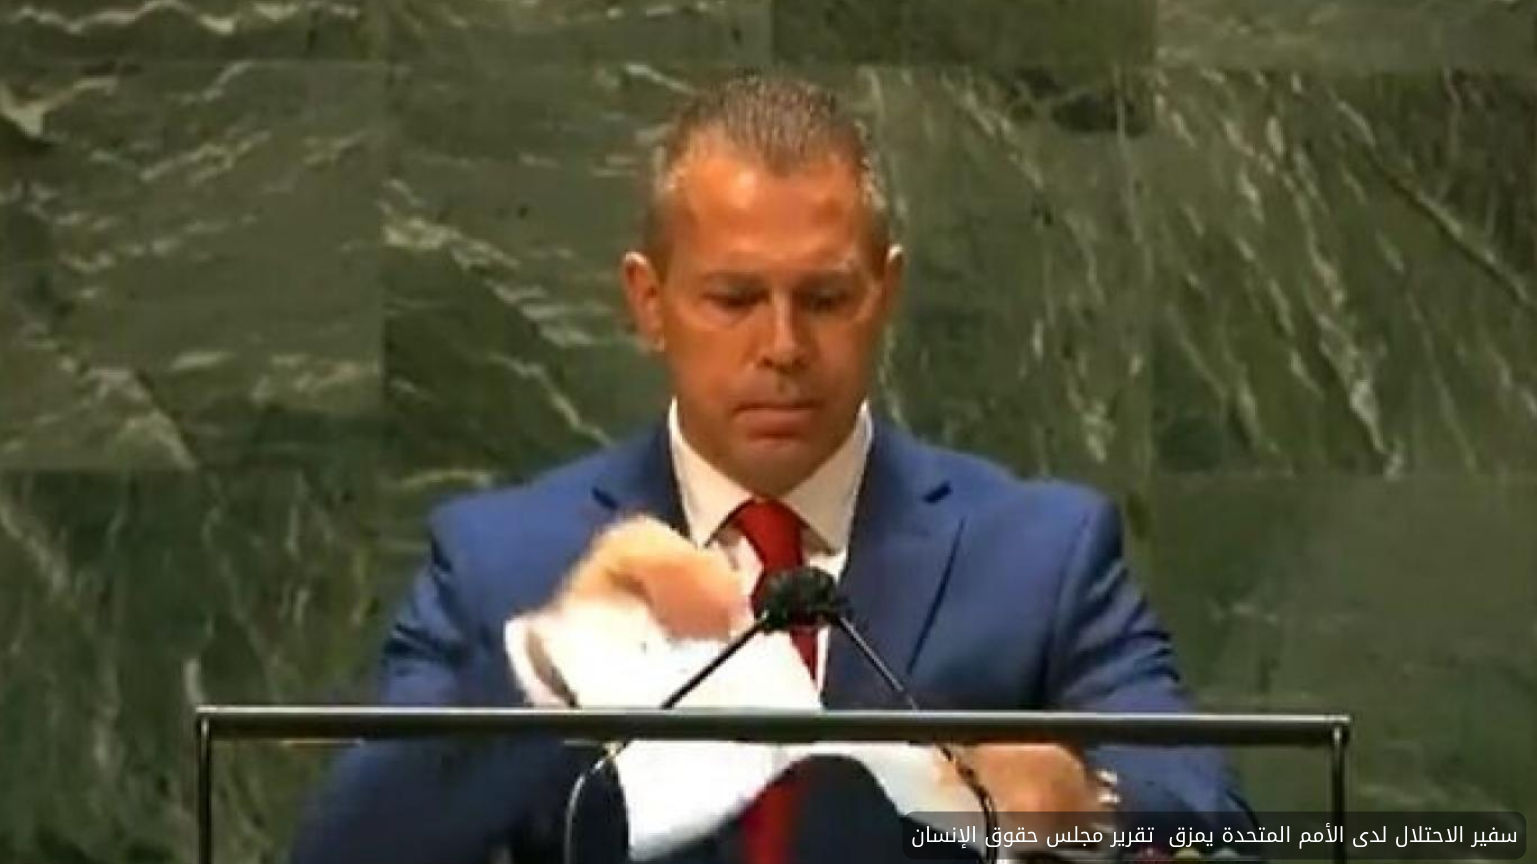 الأمين العام للأمم المتحدة: هجمات حماس لم تأت من فراغ.. والاحتلال يطالب بإقالته